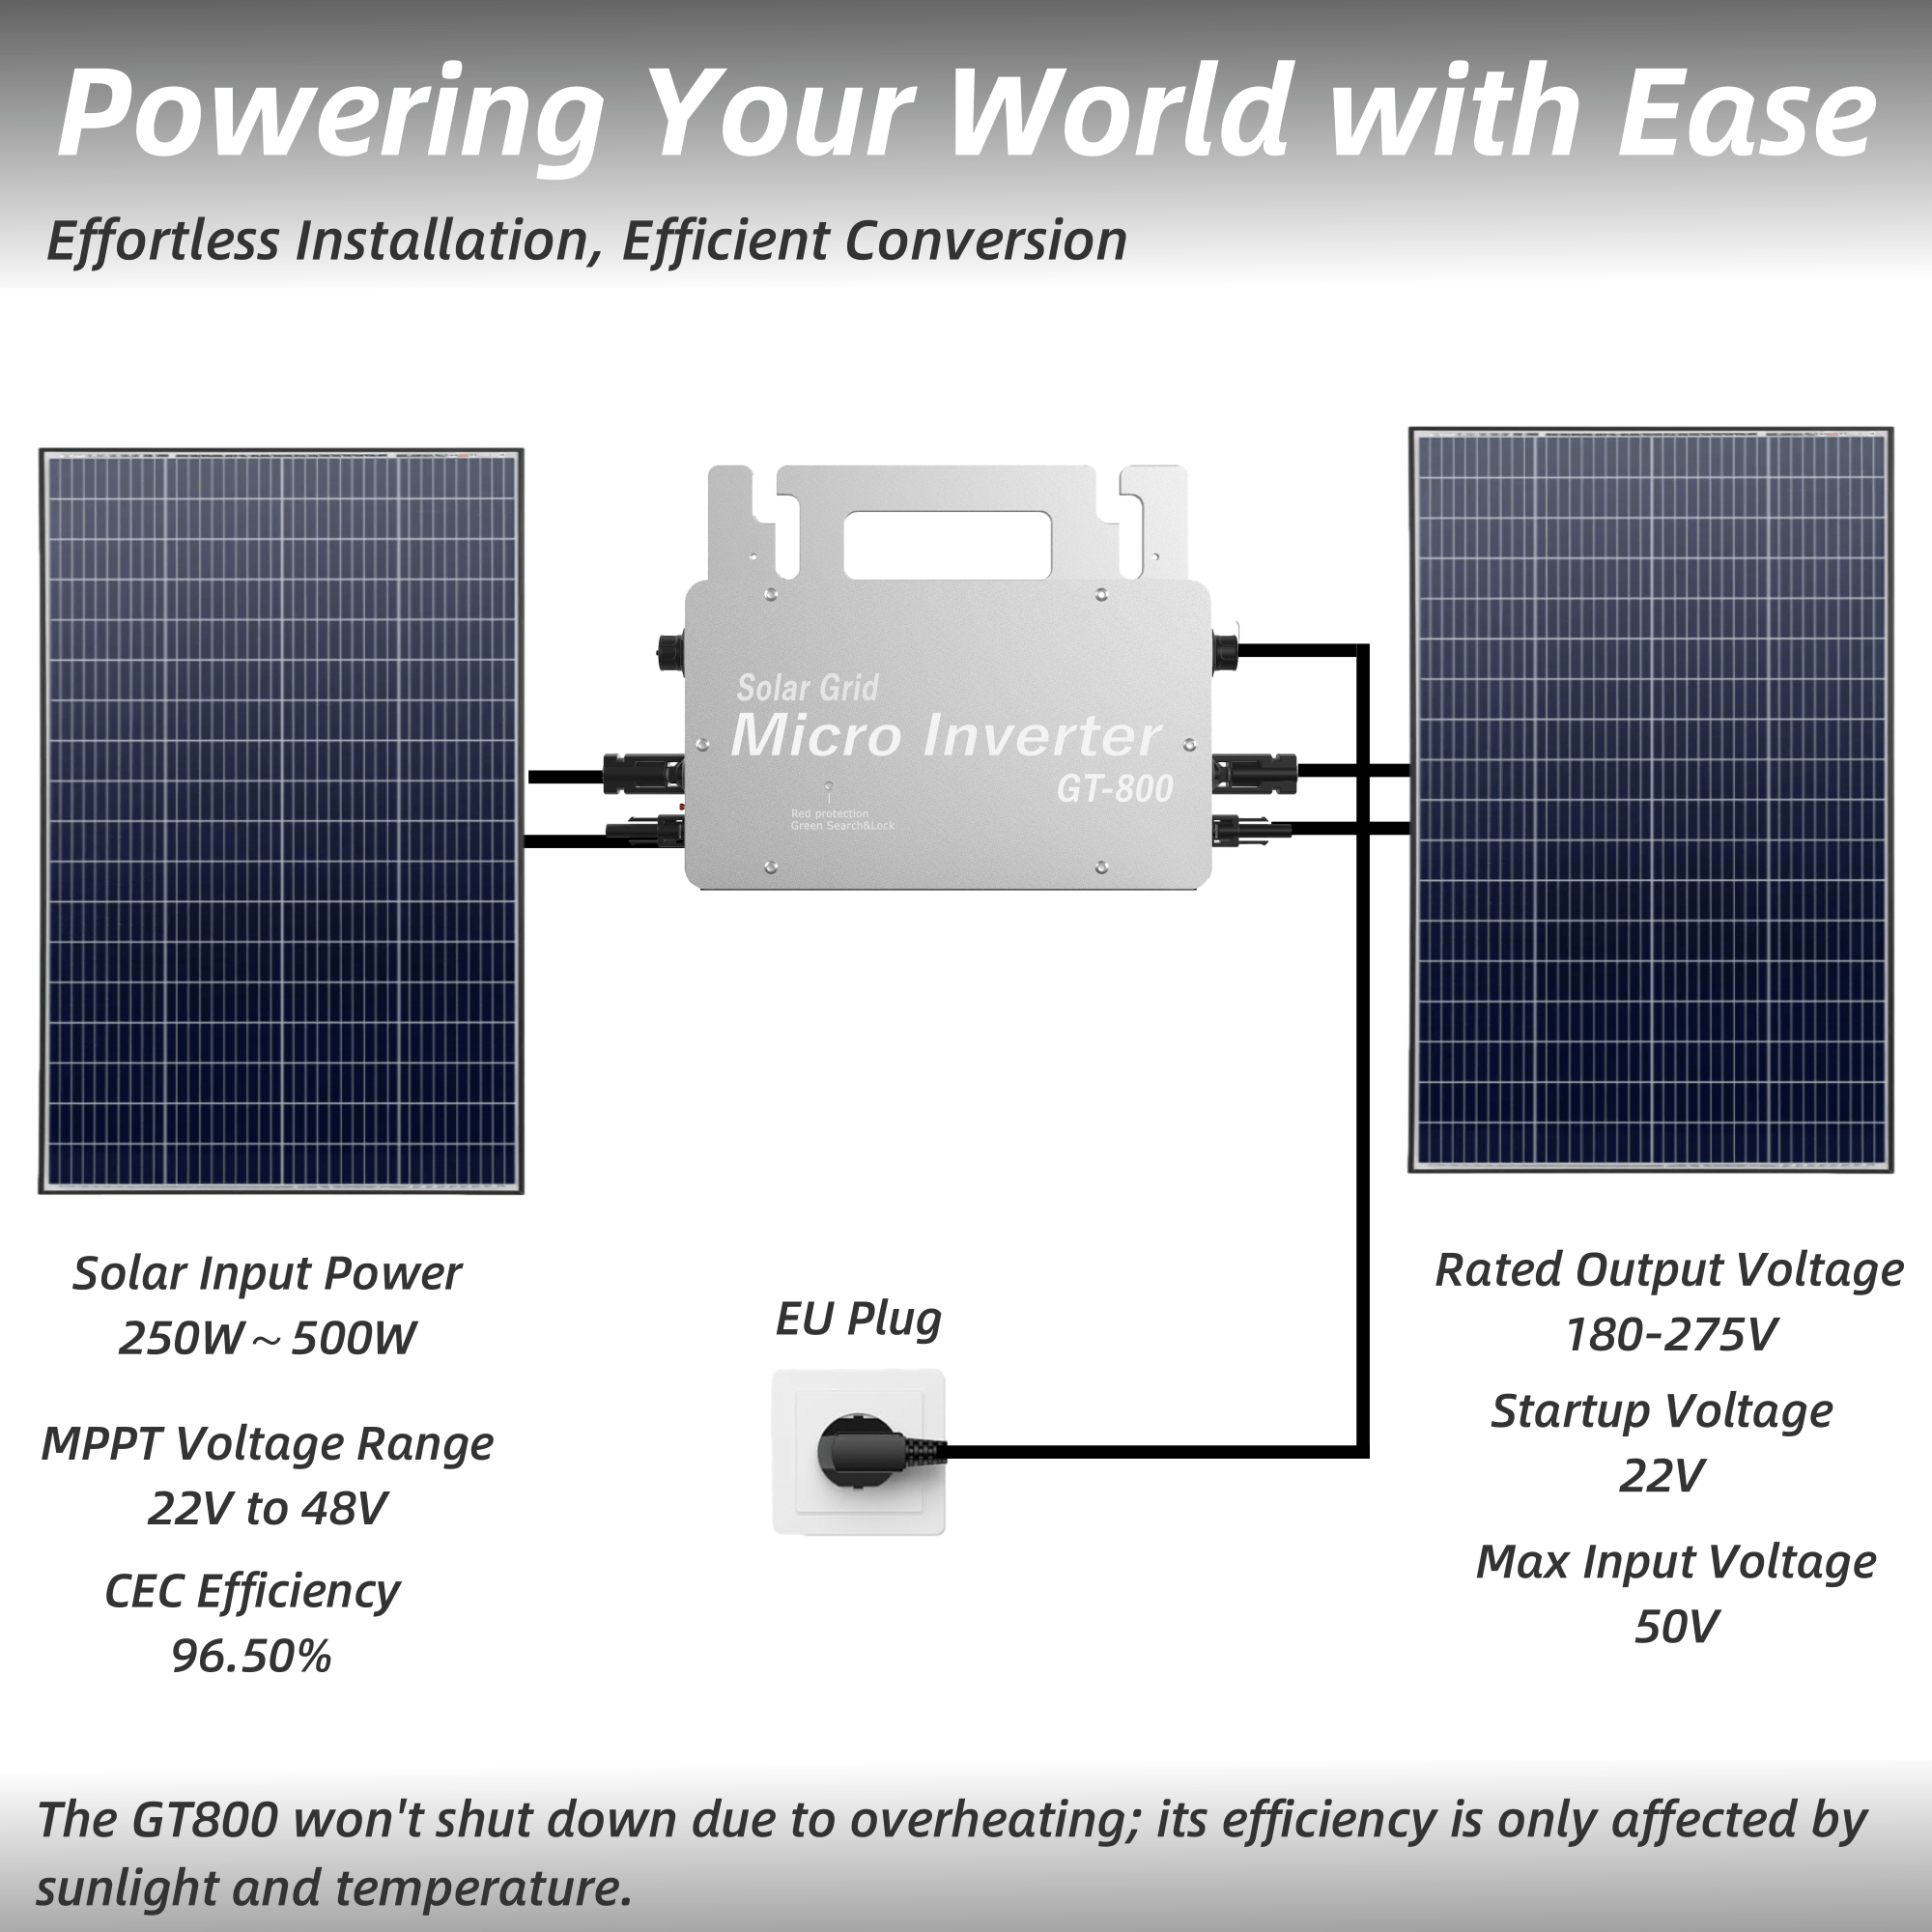 Erayak Micro-interrupteur 600W/800W, micro-interrupteur intégré MPPT sur réseau pour usine de construction de bâtiments, interrupteur photovoltaïque pour 2 panneaux solaires, étanche IP67, WiFi